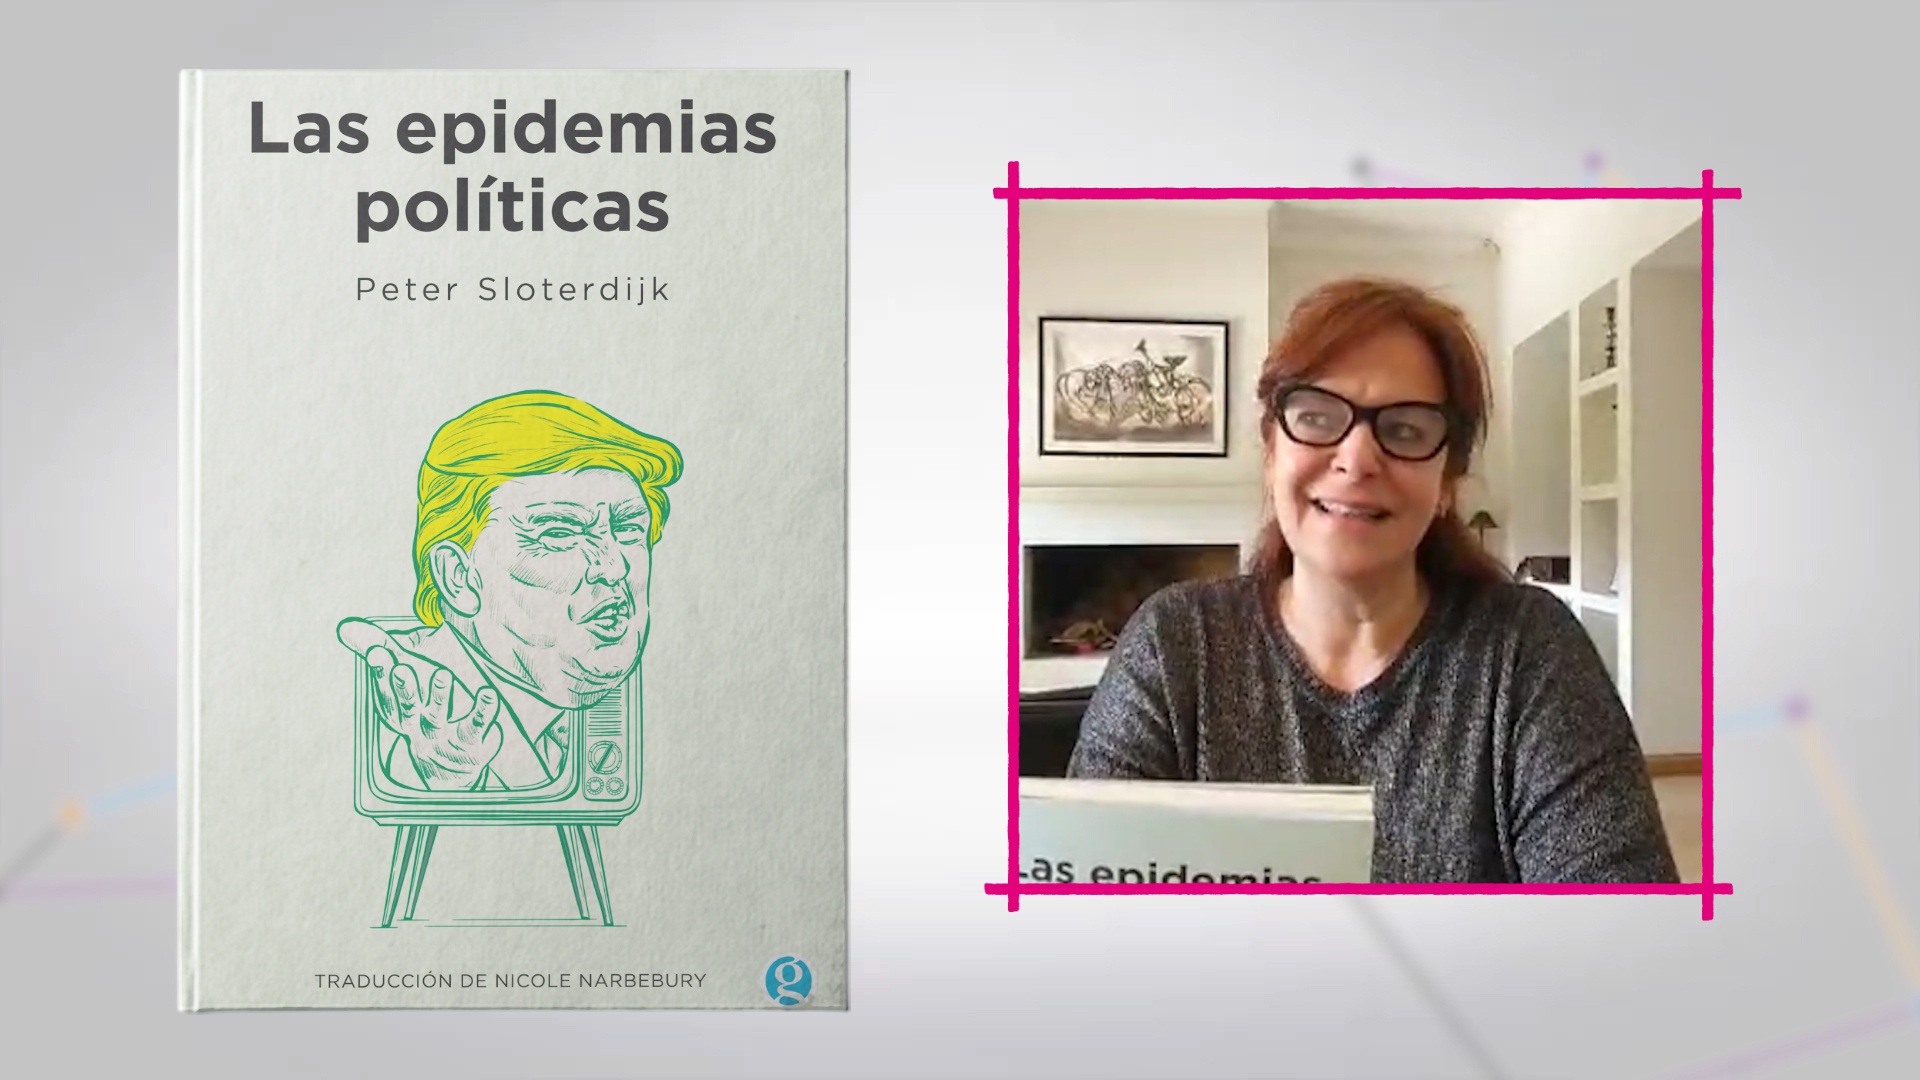 Un libro para recomendar: “Las epidemias políticas”, de Peter Sloterdijk